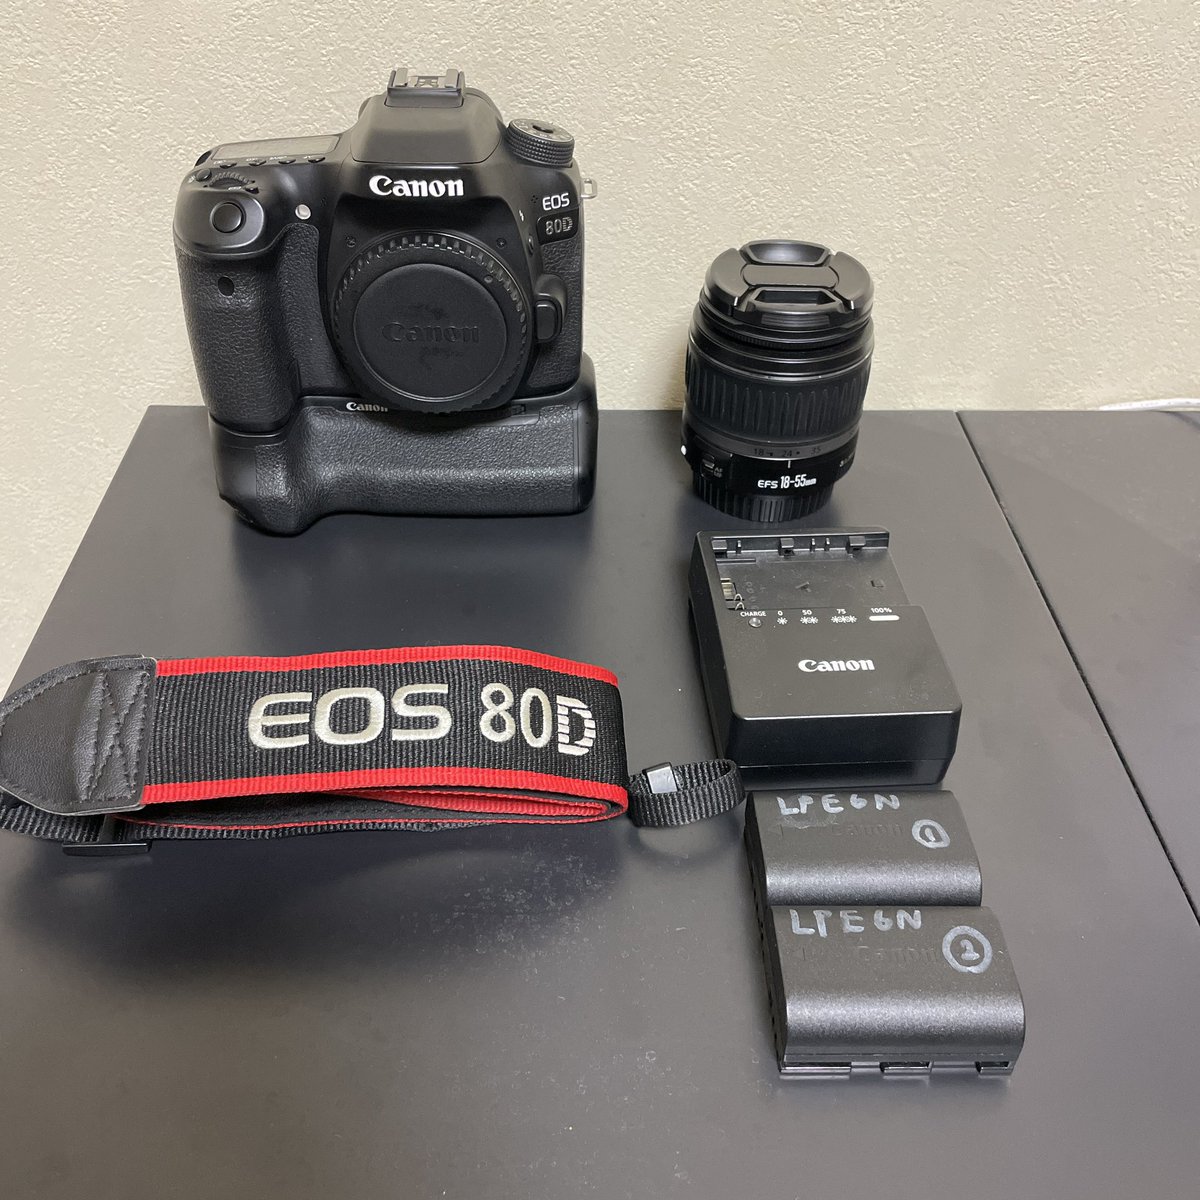 お久しぶりです！突然ですがカメラ売ります！
ちょっと古めのEOS80Dですがご興味がある方はDMください！手渡し希望なので東京か名古屋か大阪ぐらいでしたら行きます！